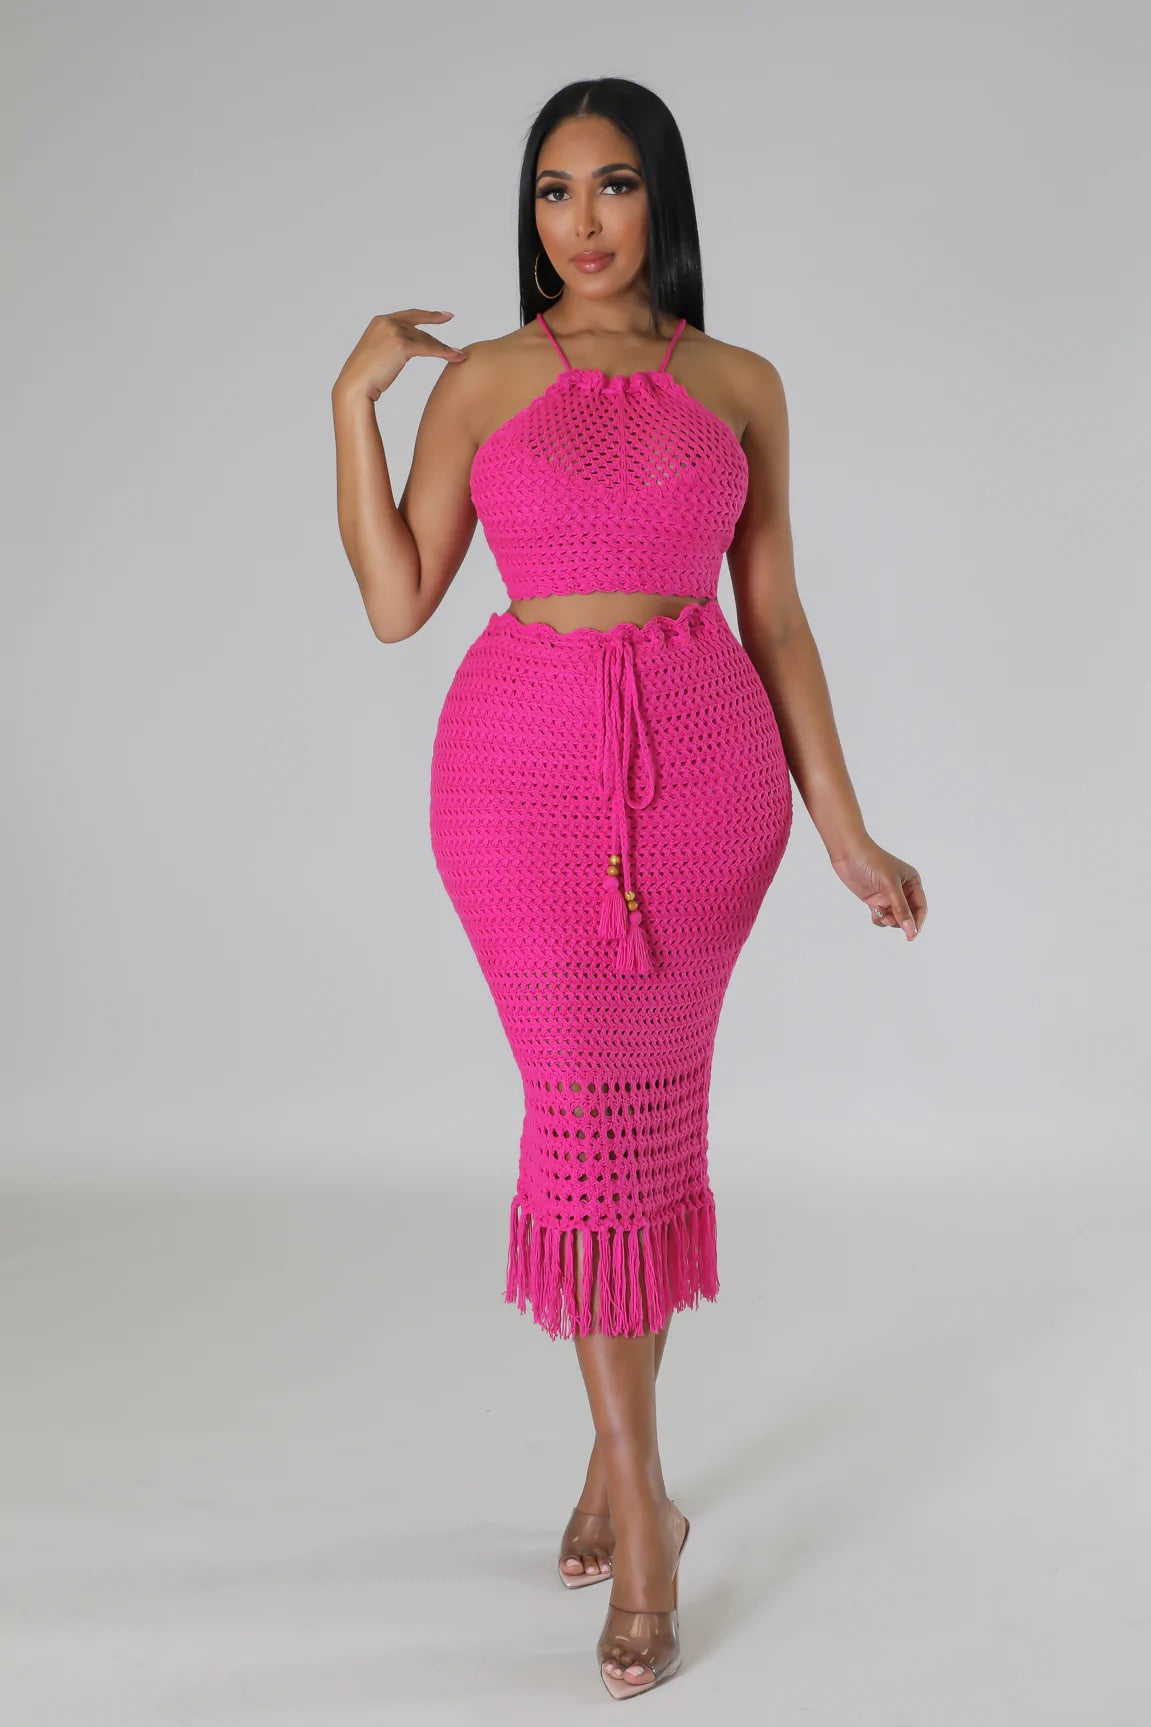 Armida Crochet Skirt Set Hot Pink